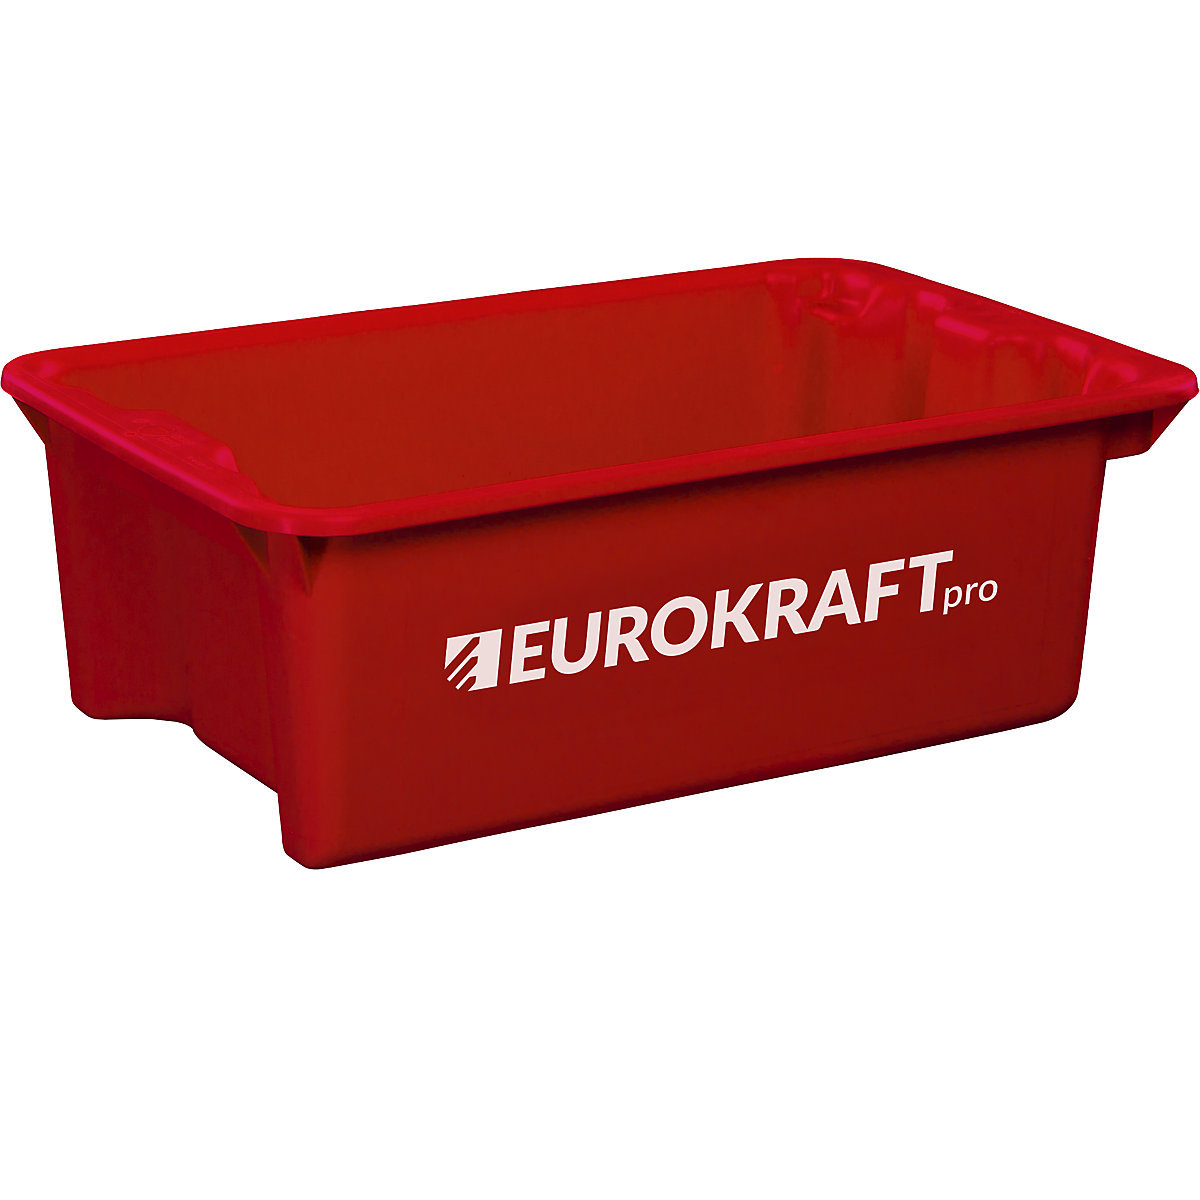 EUROKRAFTpro – Obrotowy pojemnik do ustawiania w stos z polipropylenu dopuszczonego do kontaktu z żywnością